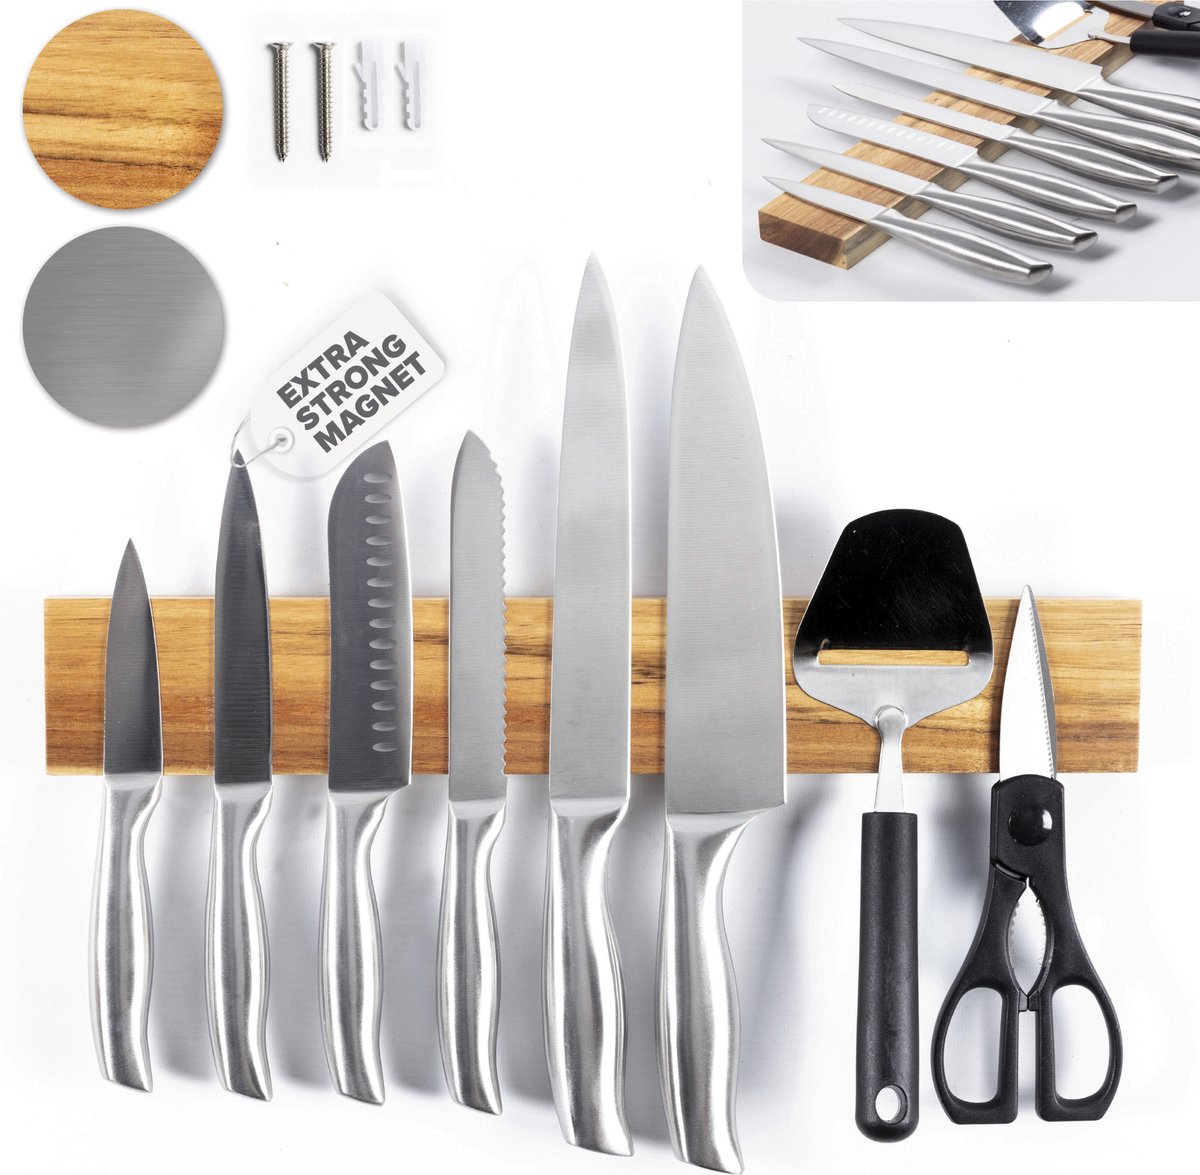 Aimant pour couteaux de cuisine Coninx - Porte-couteau magnétique en acier  inoxydable